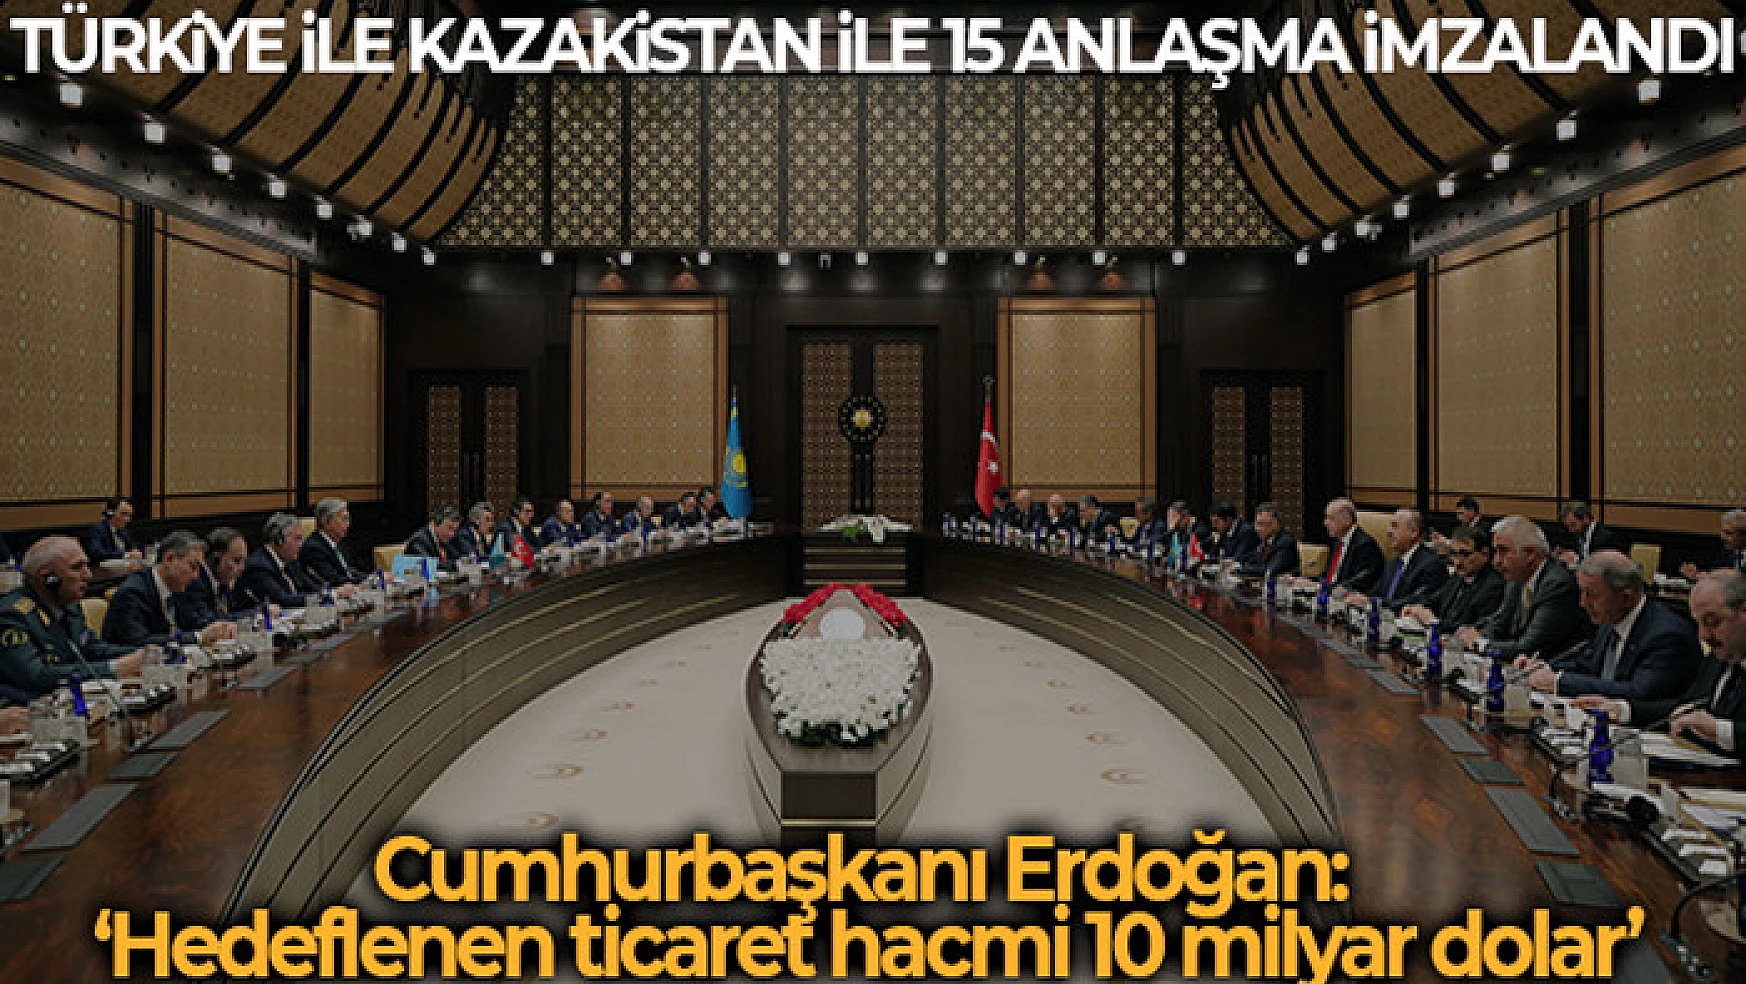 Cumhurbaşkanı Erdoğan: Kazakistan'da hedeflenen ticaret hacmi 10 milyar dolar